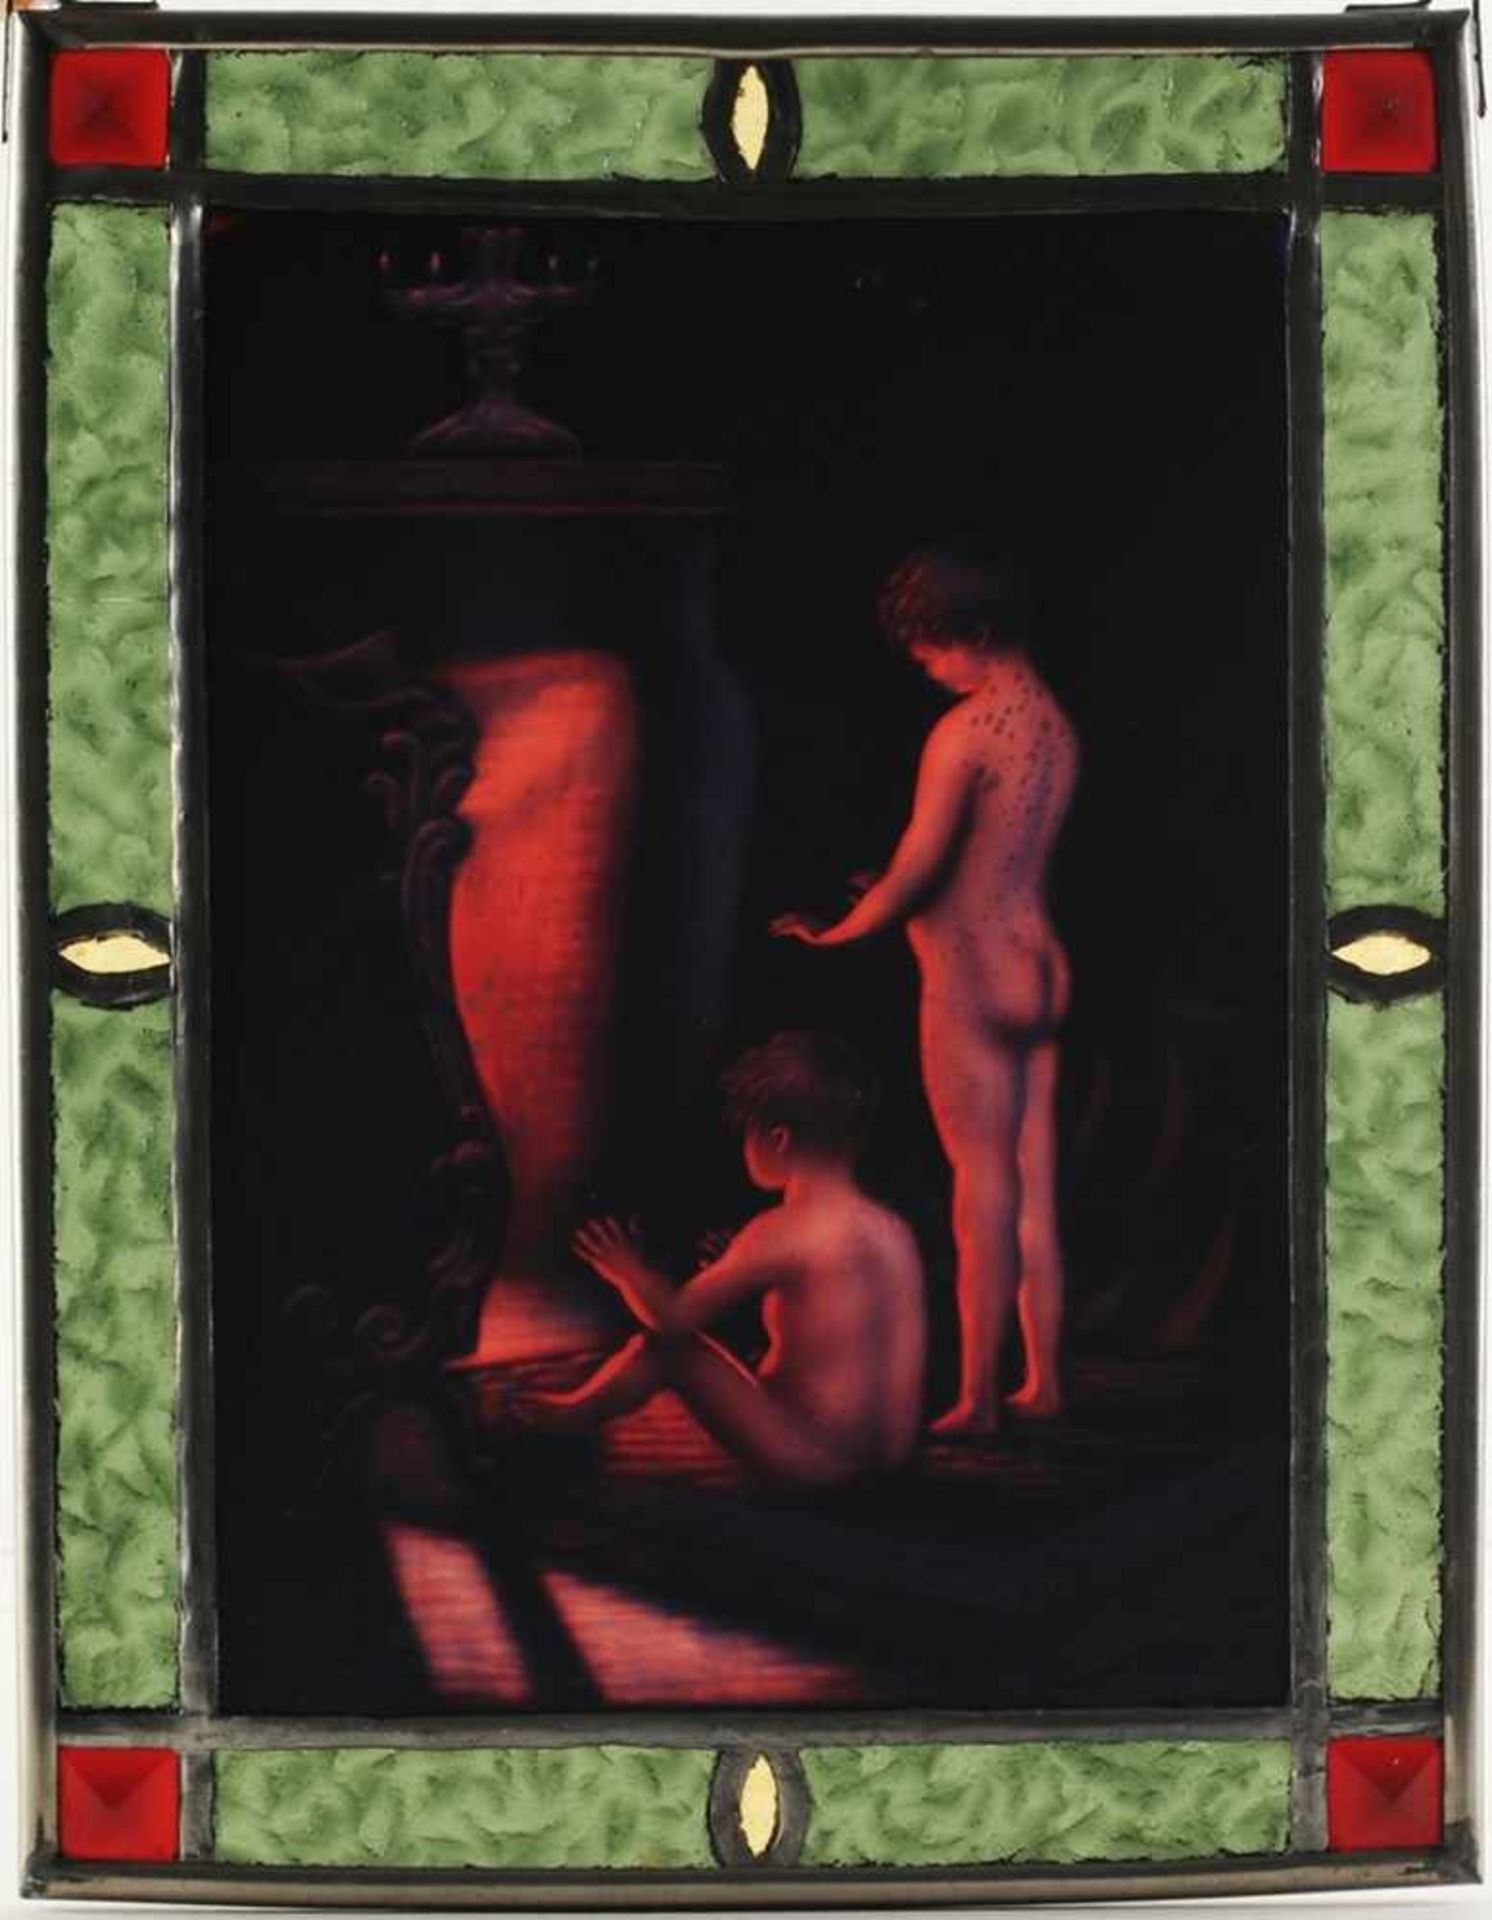 FensterbildIm bleiverglasten Rahmen Tafel mit Darstellung d. Gemäldes "Nach dem Bade" v. Paul